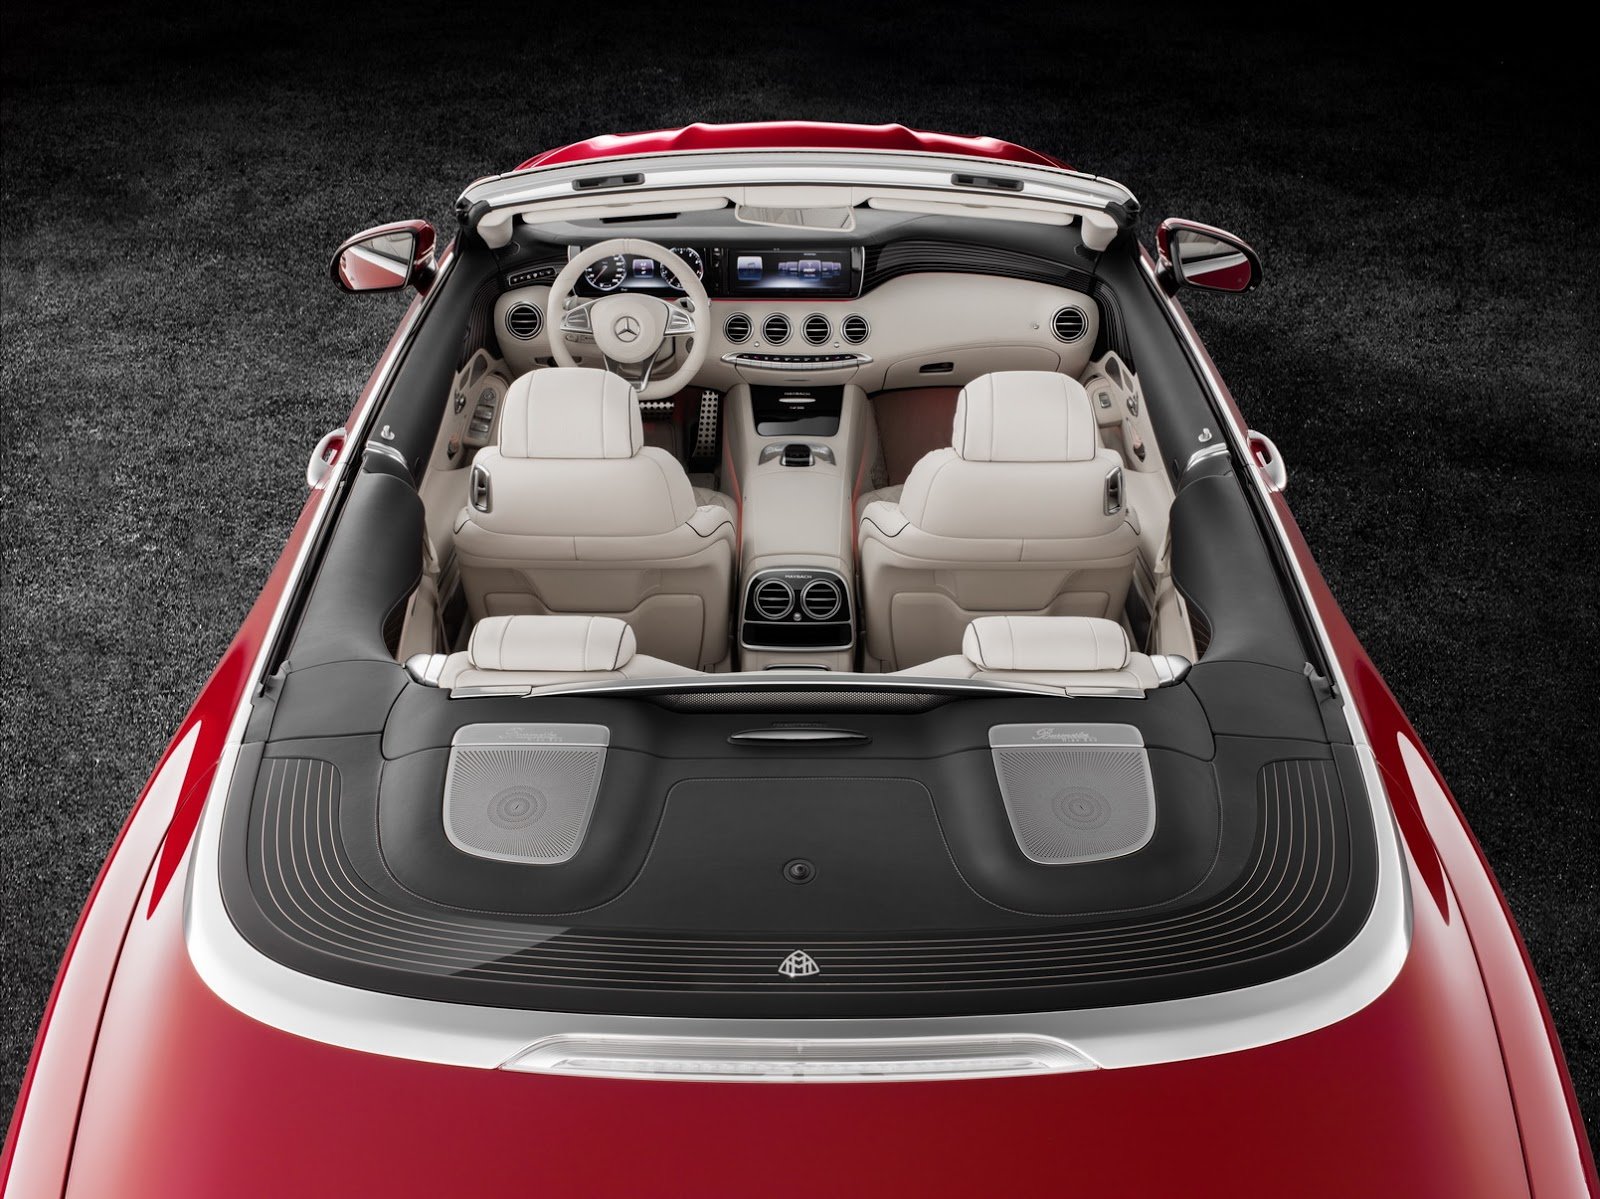 Mercedes-Maybach S 650 Cabriolet patří k nejluxusnějším autům na trhu.